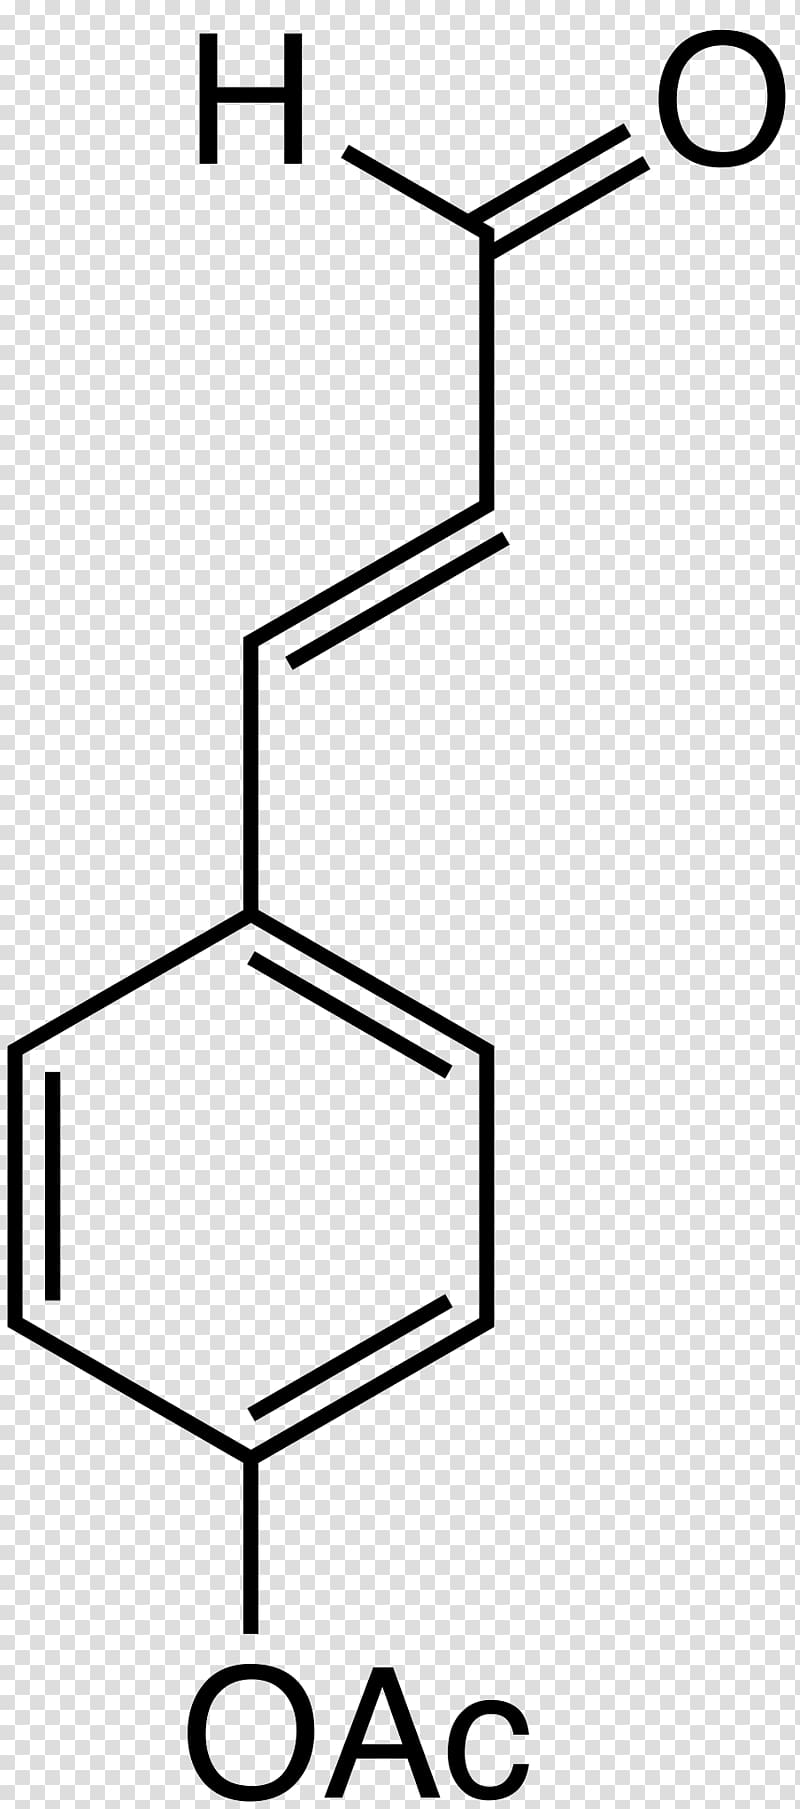 Ferulic acid Chemical compound Alcohol Molecule, sodium transparent background PNG clipart